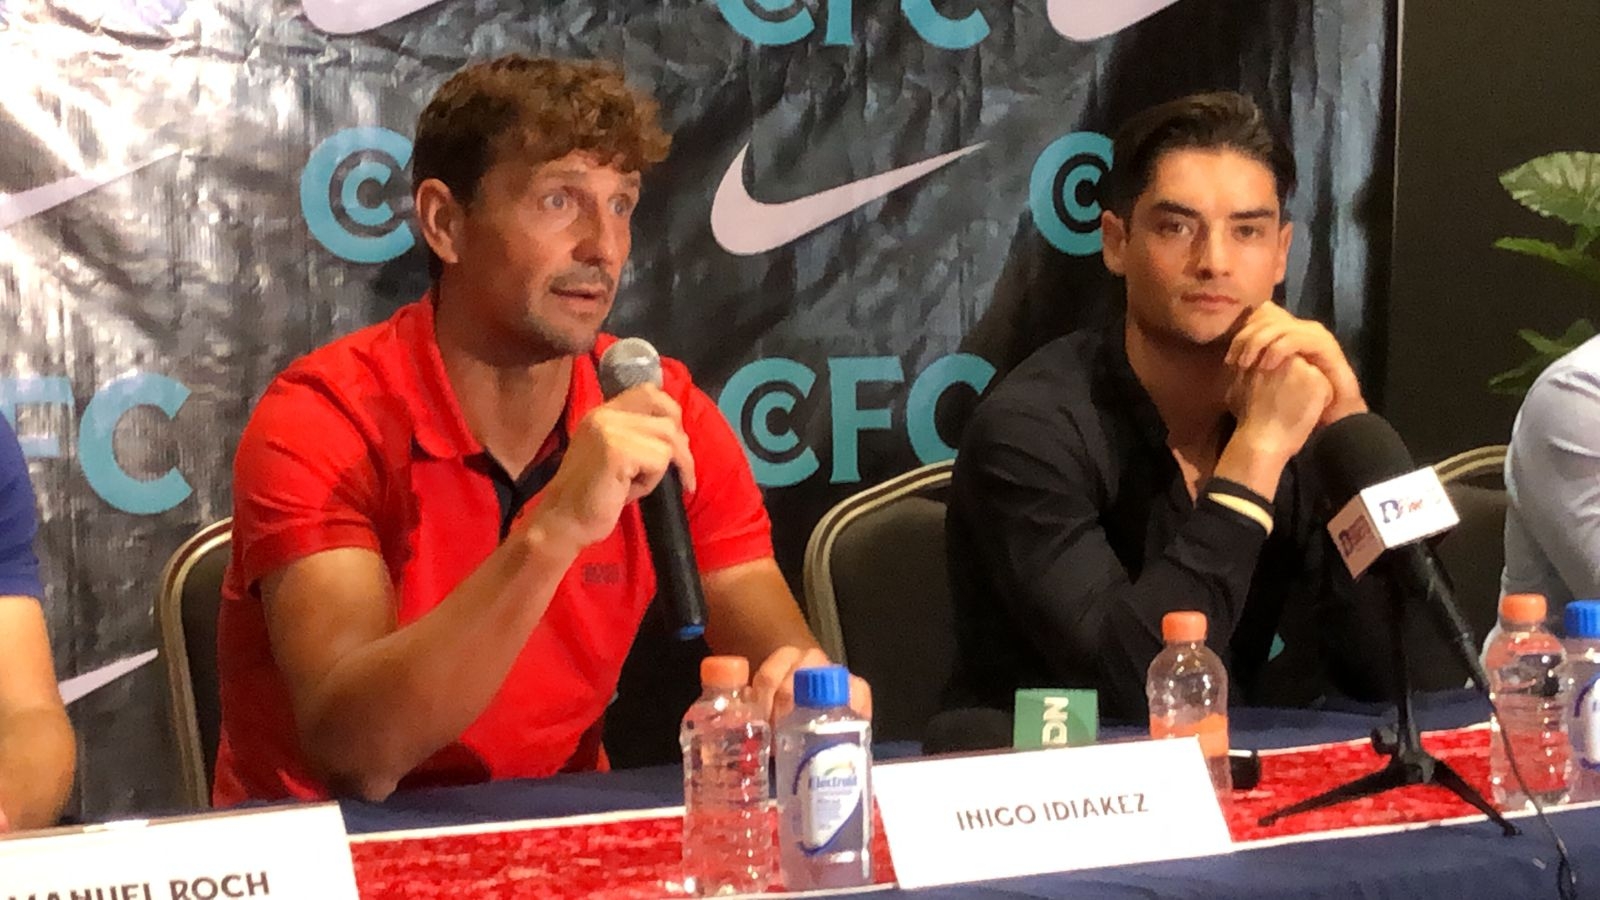 Íñigo Idiákez Barkaiztegi (camisa roja), indicó que llevará a Cancún FC al éxito, pues su equipó viene listo para iniciar con los trabajos